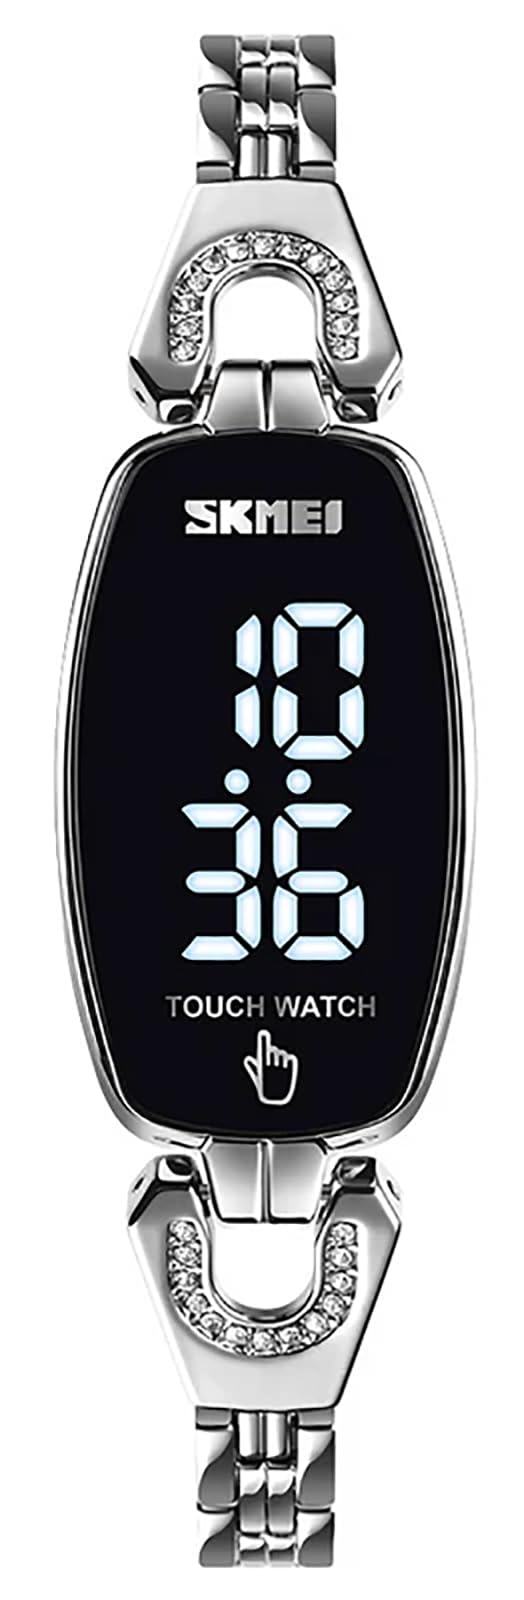 Gosasa Top-Marke, elektronische Luxus-Damenuhr, LED-Touchscreen, digitale Damen-Armbanduhr, Business-Uhr für Damen, Quarz, wasserdicht, elegant, weibliche Armbanduhr